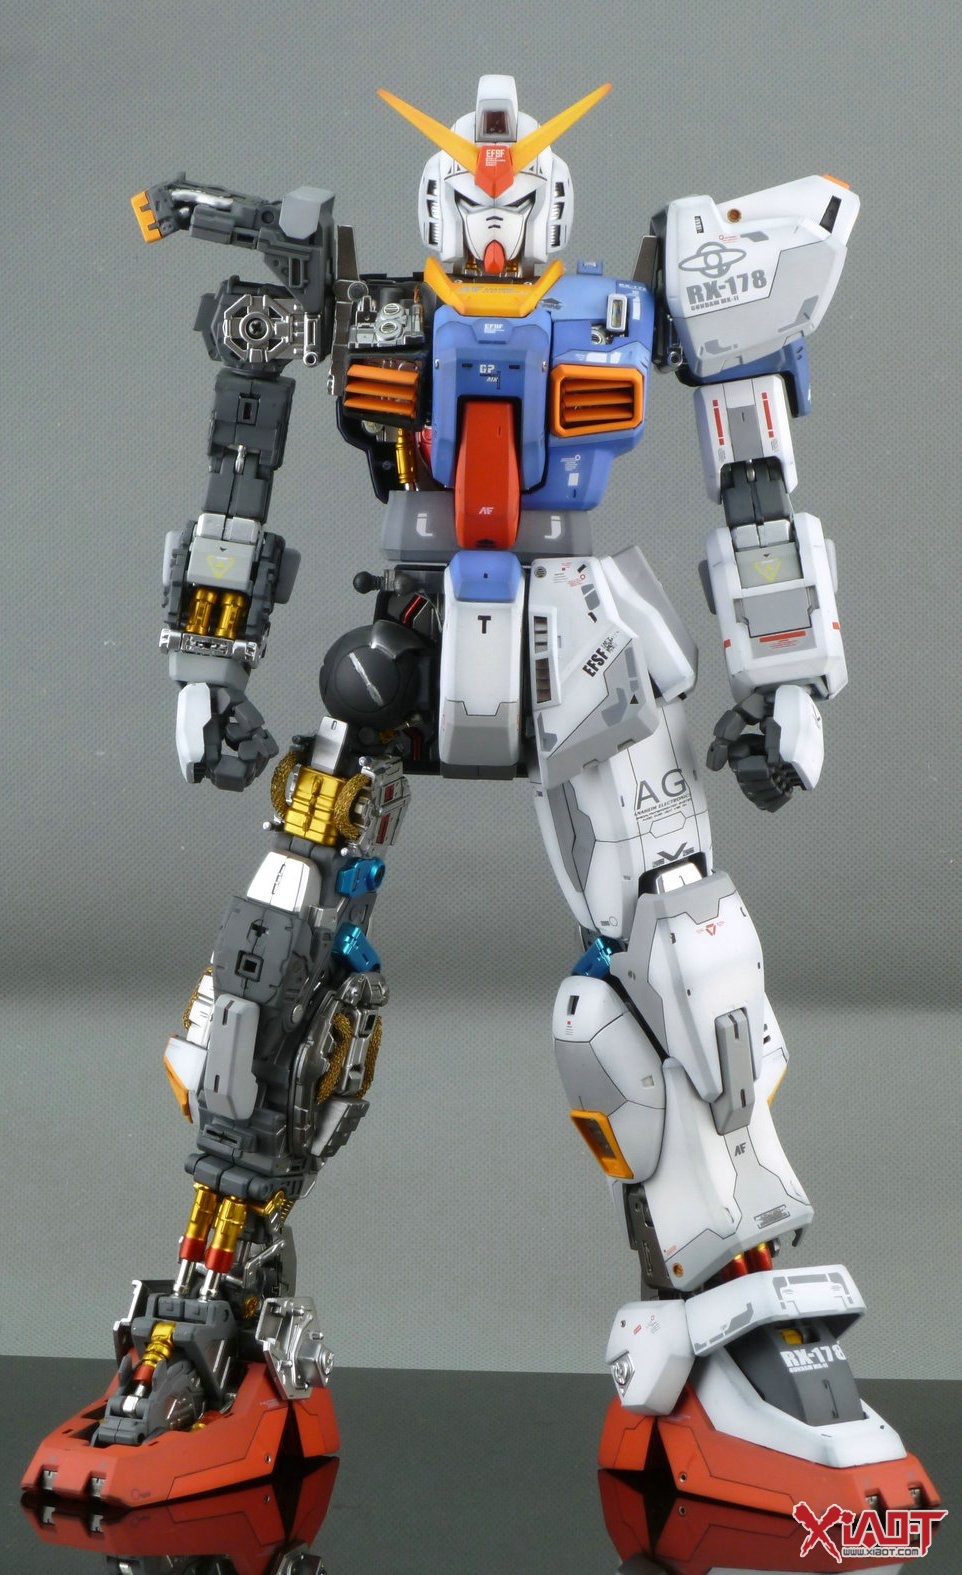 1/60 Perfect Grade Gundam Mk-II AEUG: Improved Work by ferrarired. Full